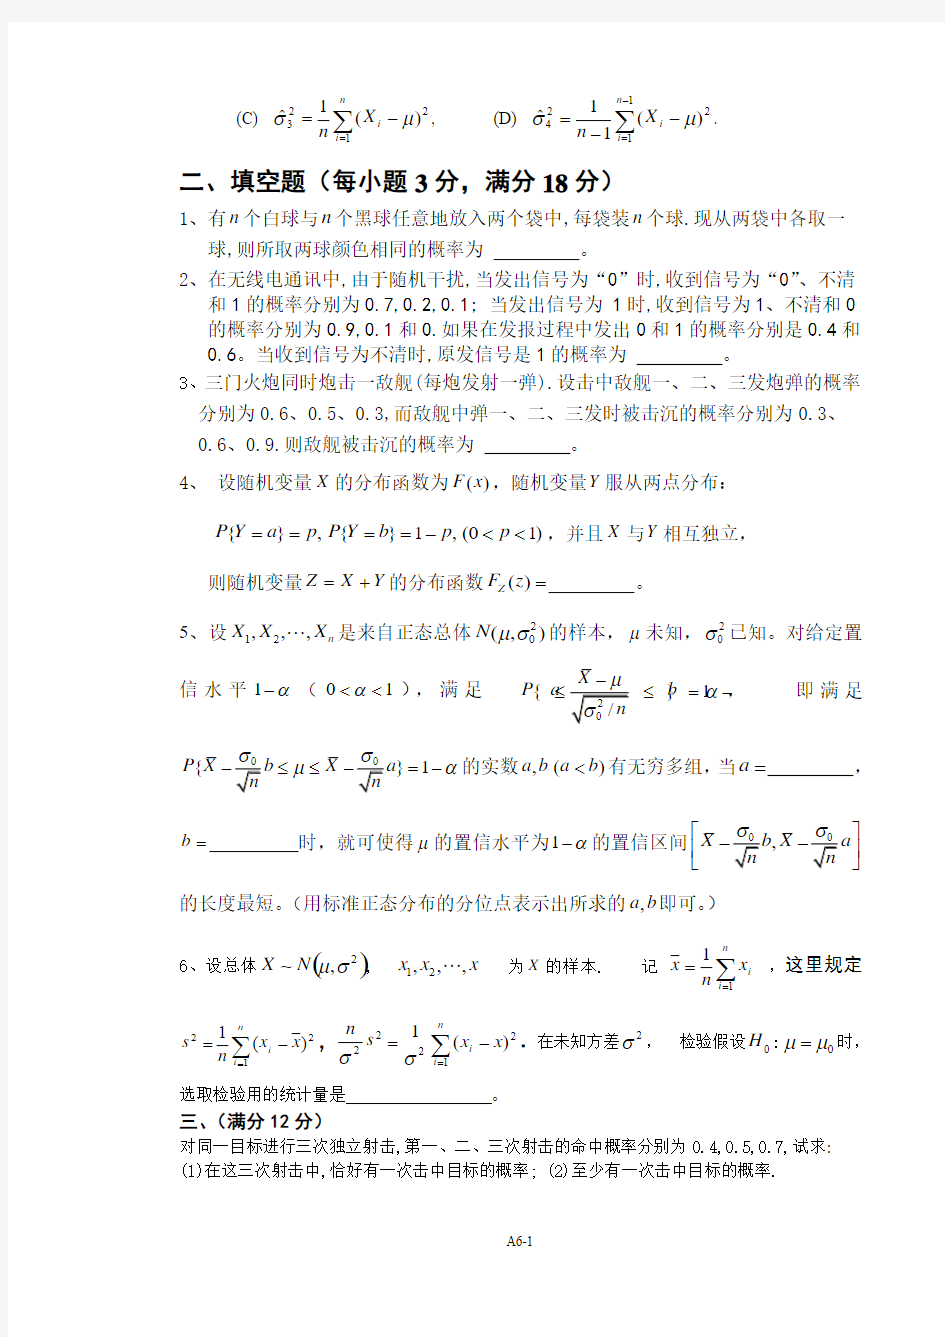 北京航空航天大学概率统计08-09第一学期试题及答案